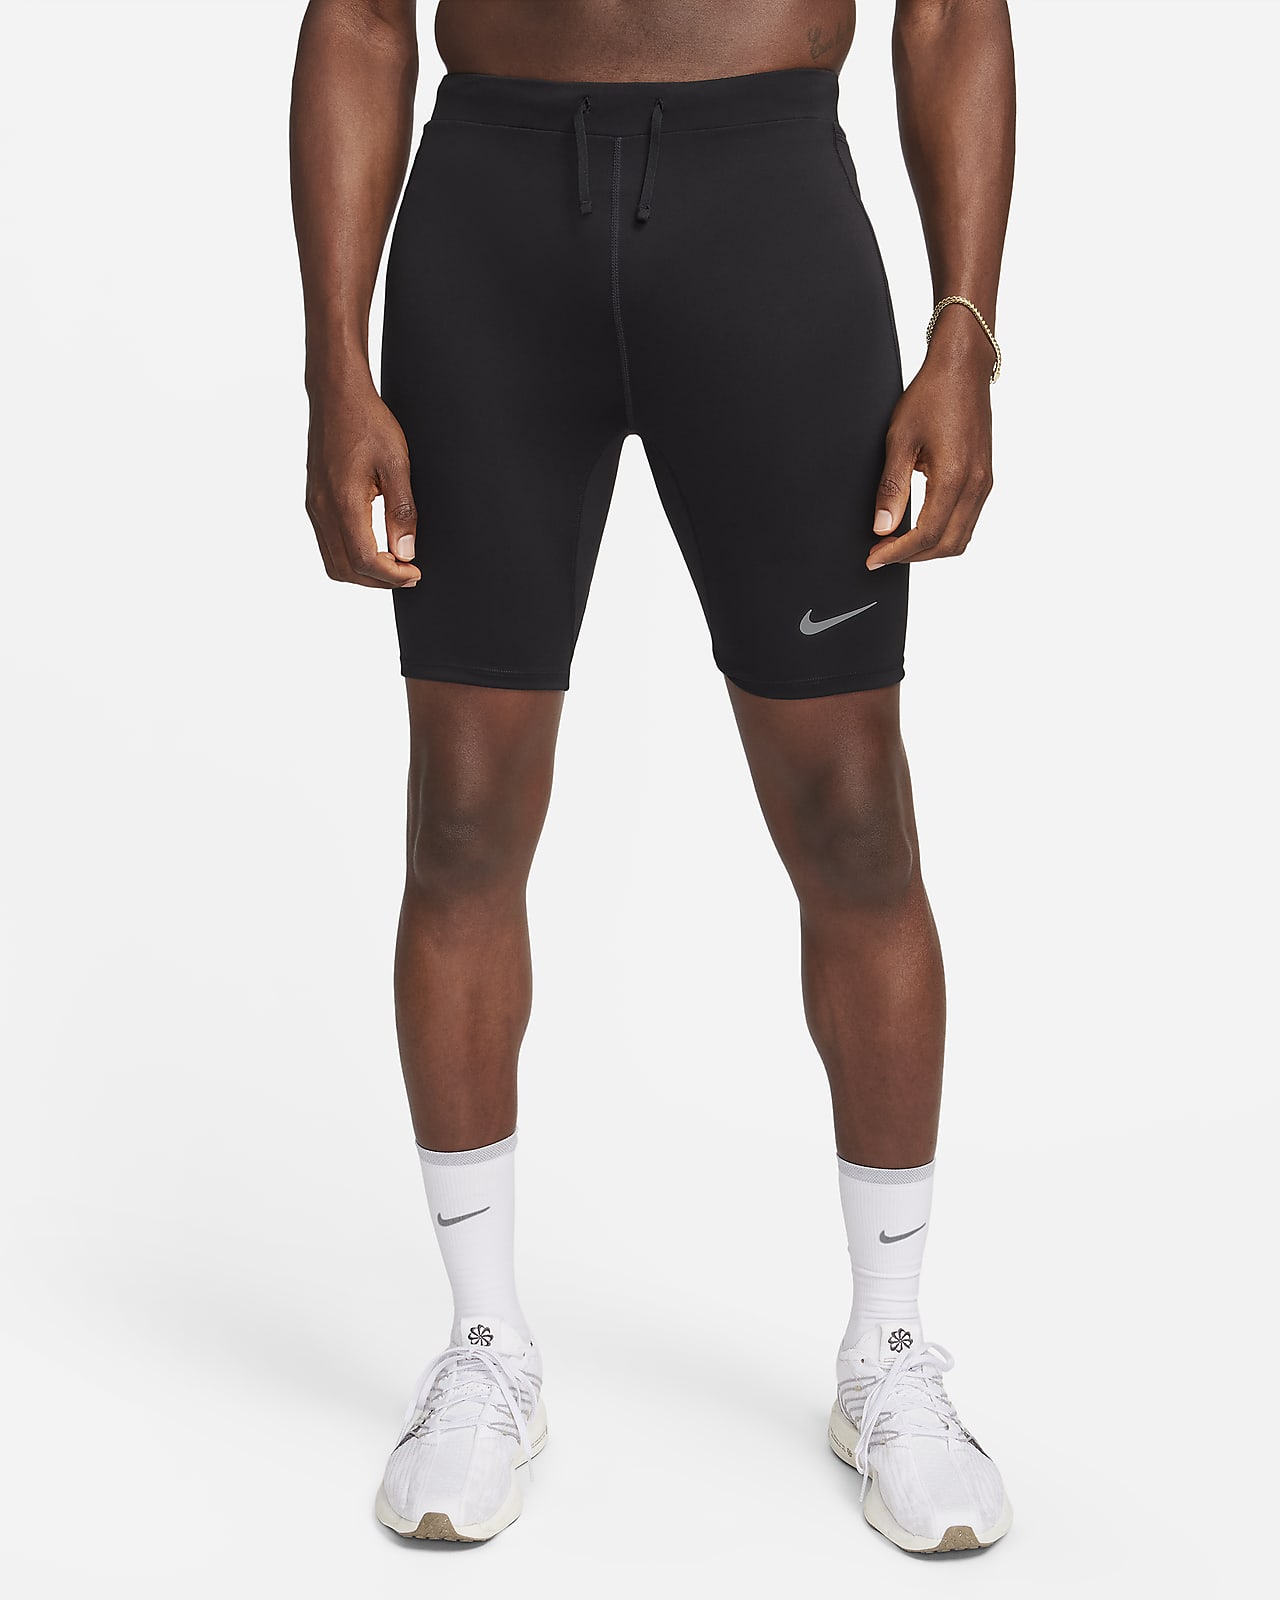 Legging de running demi-longueur avec sous-short Dri-FIT Nike Fast pour homme